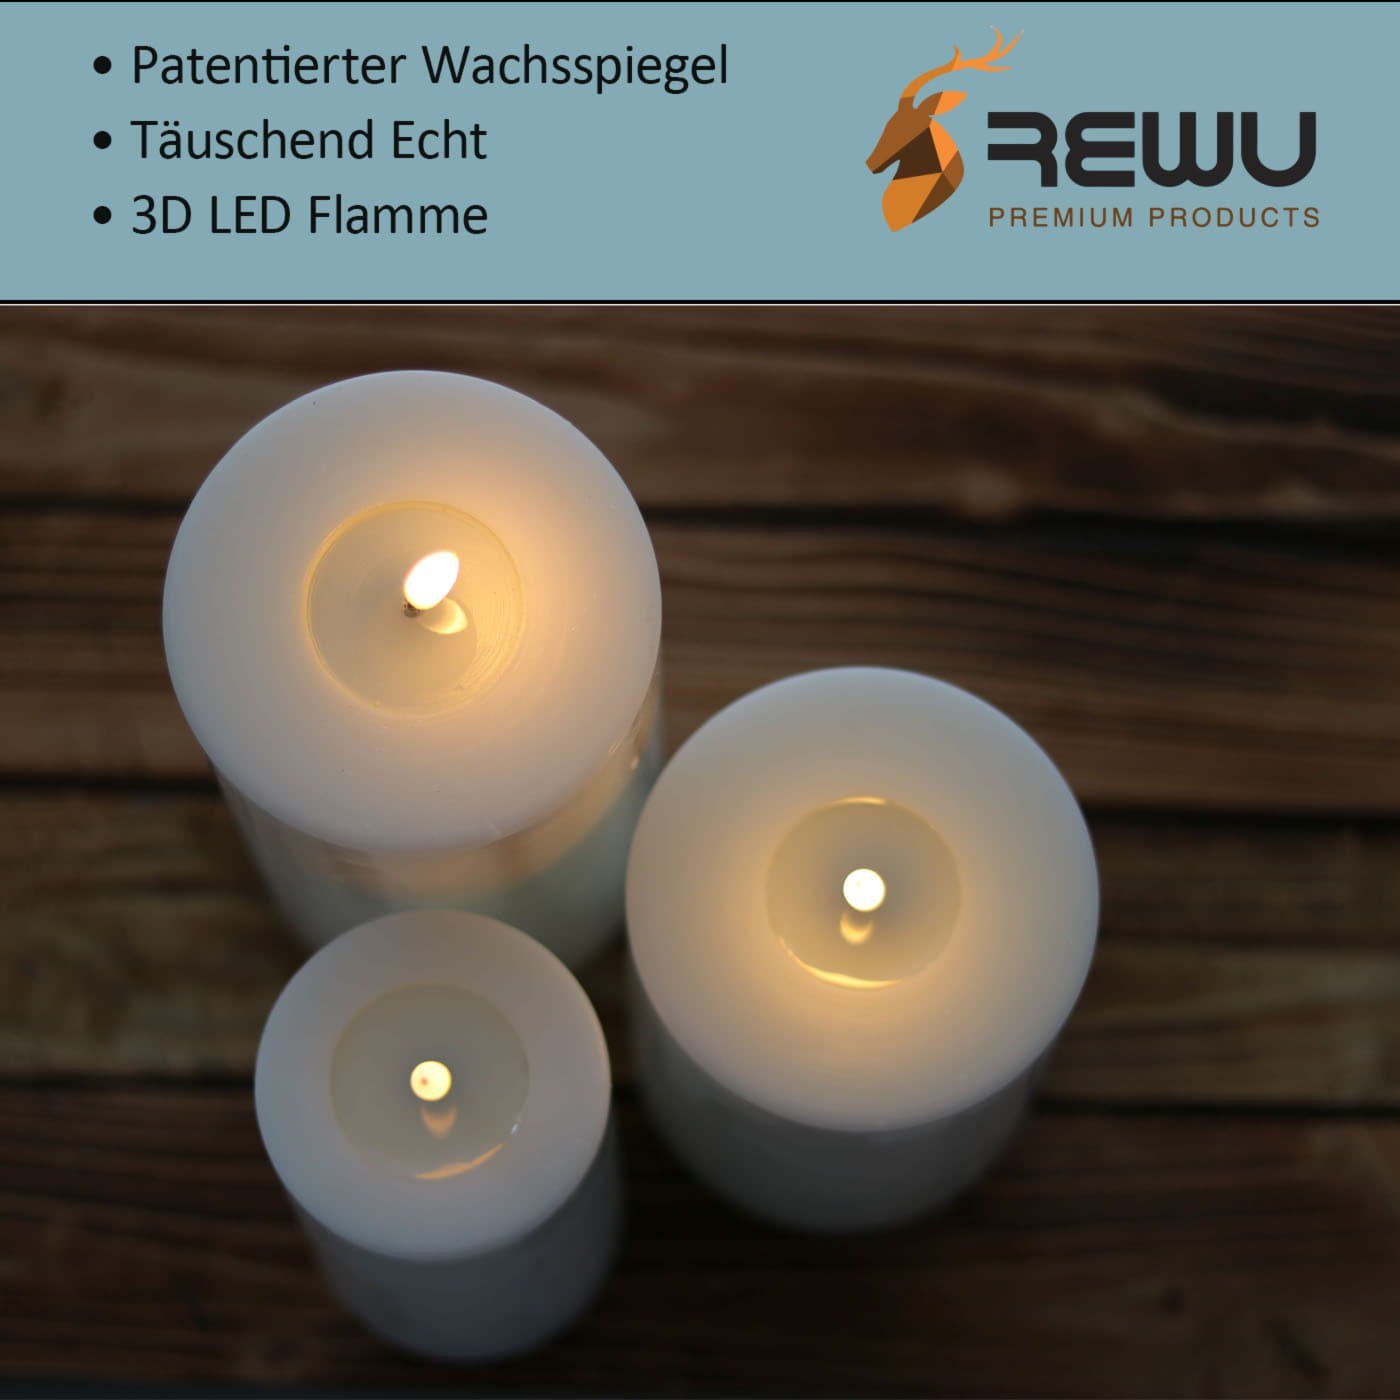 Wachsspiegel Echt Warmweißes beige und LED-Kerze Timerfunktion Mit Deluxe Flamme, Licht (Einteilig), Homeart 3D wirkende flackernd,